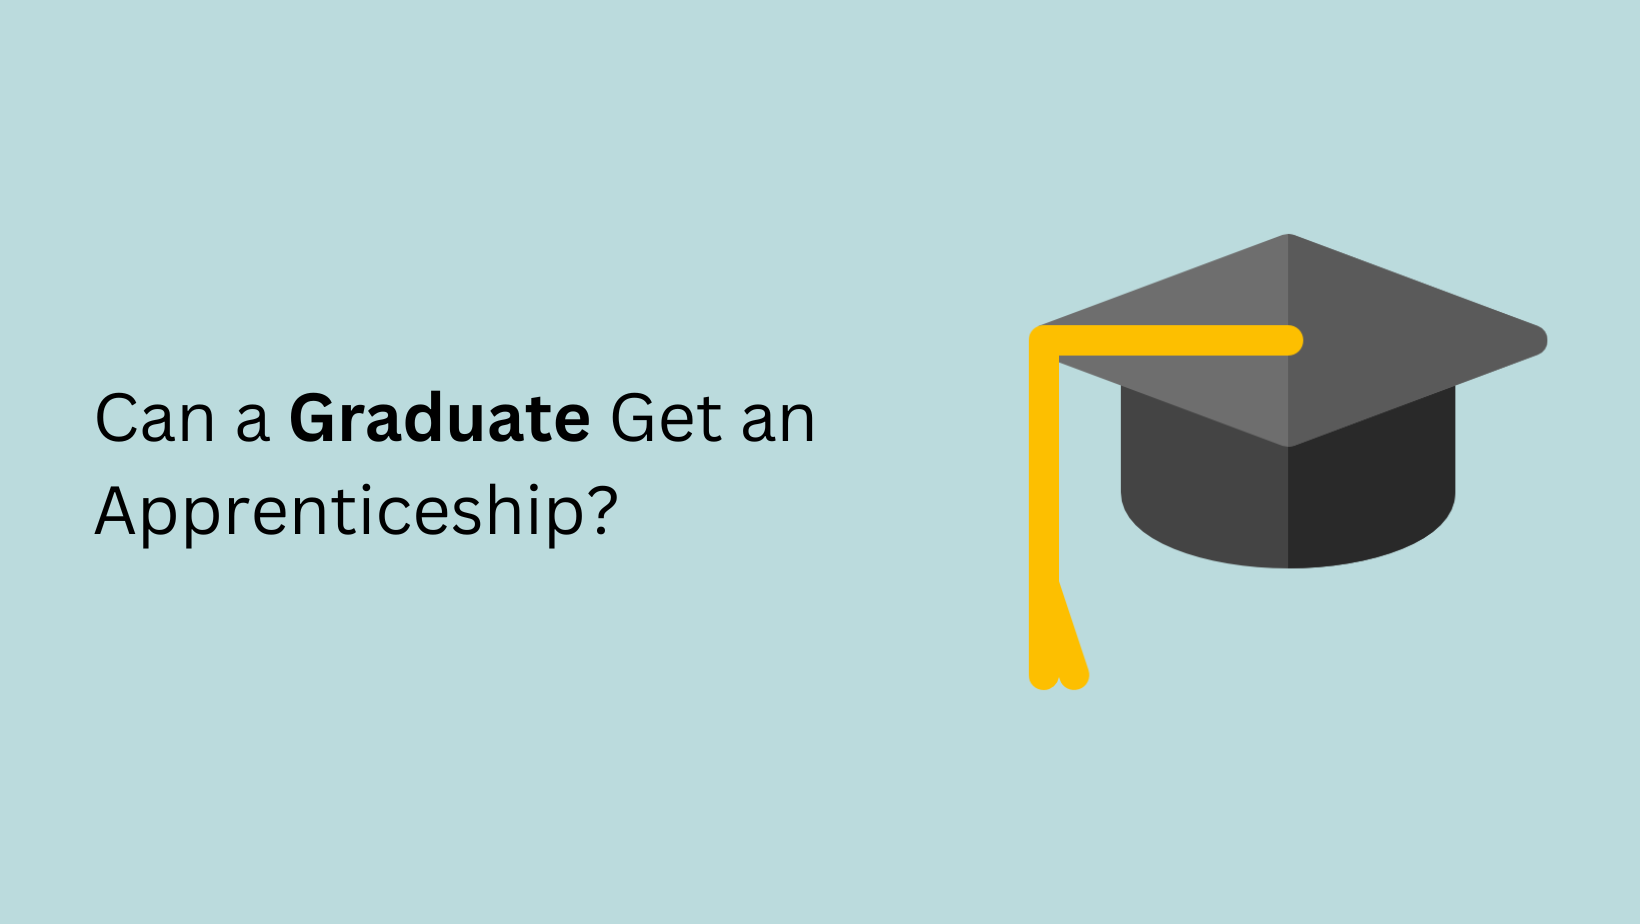 Can a Graduate Get an Apprenticeship